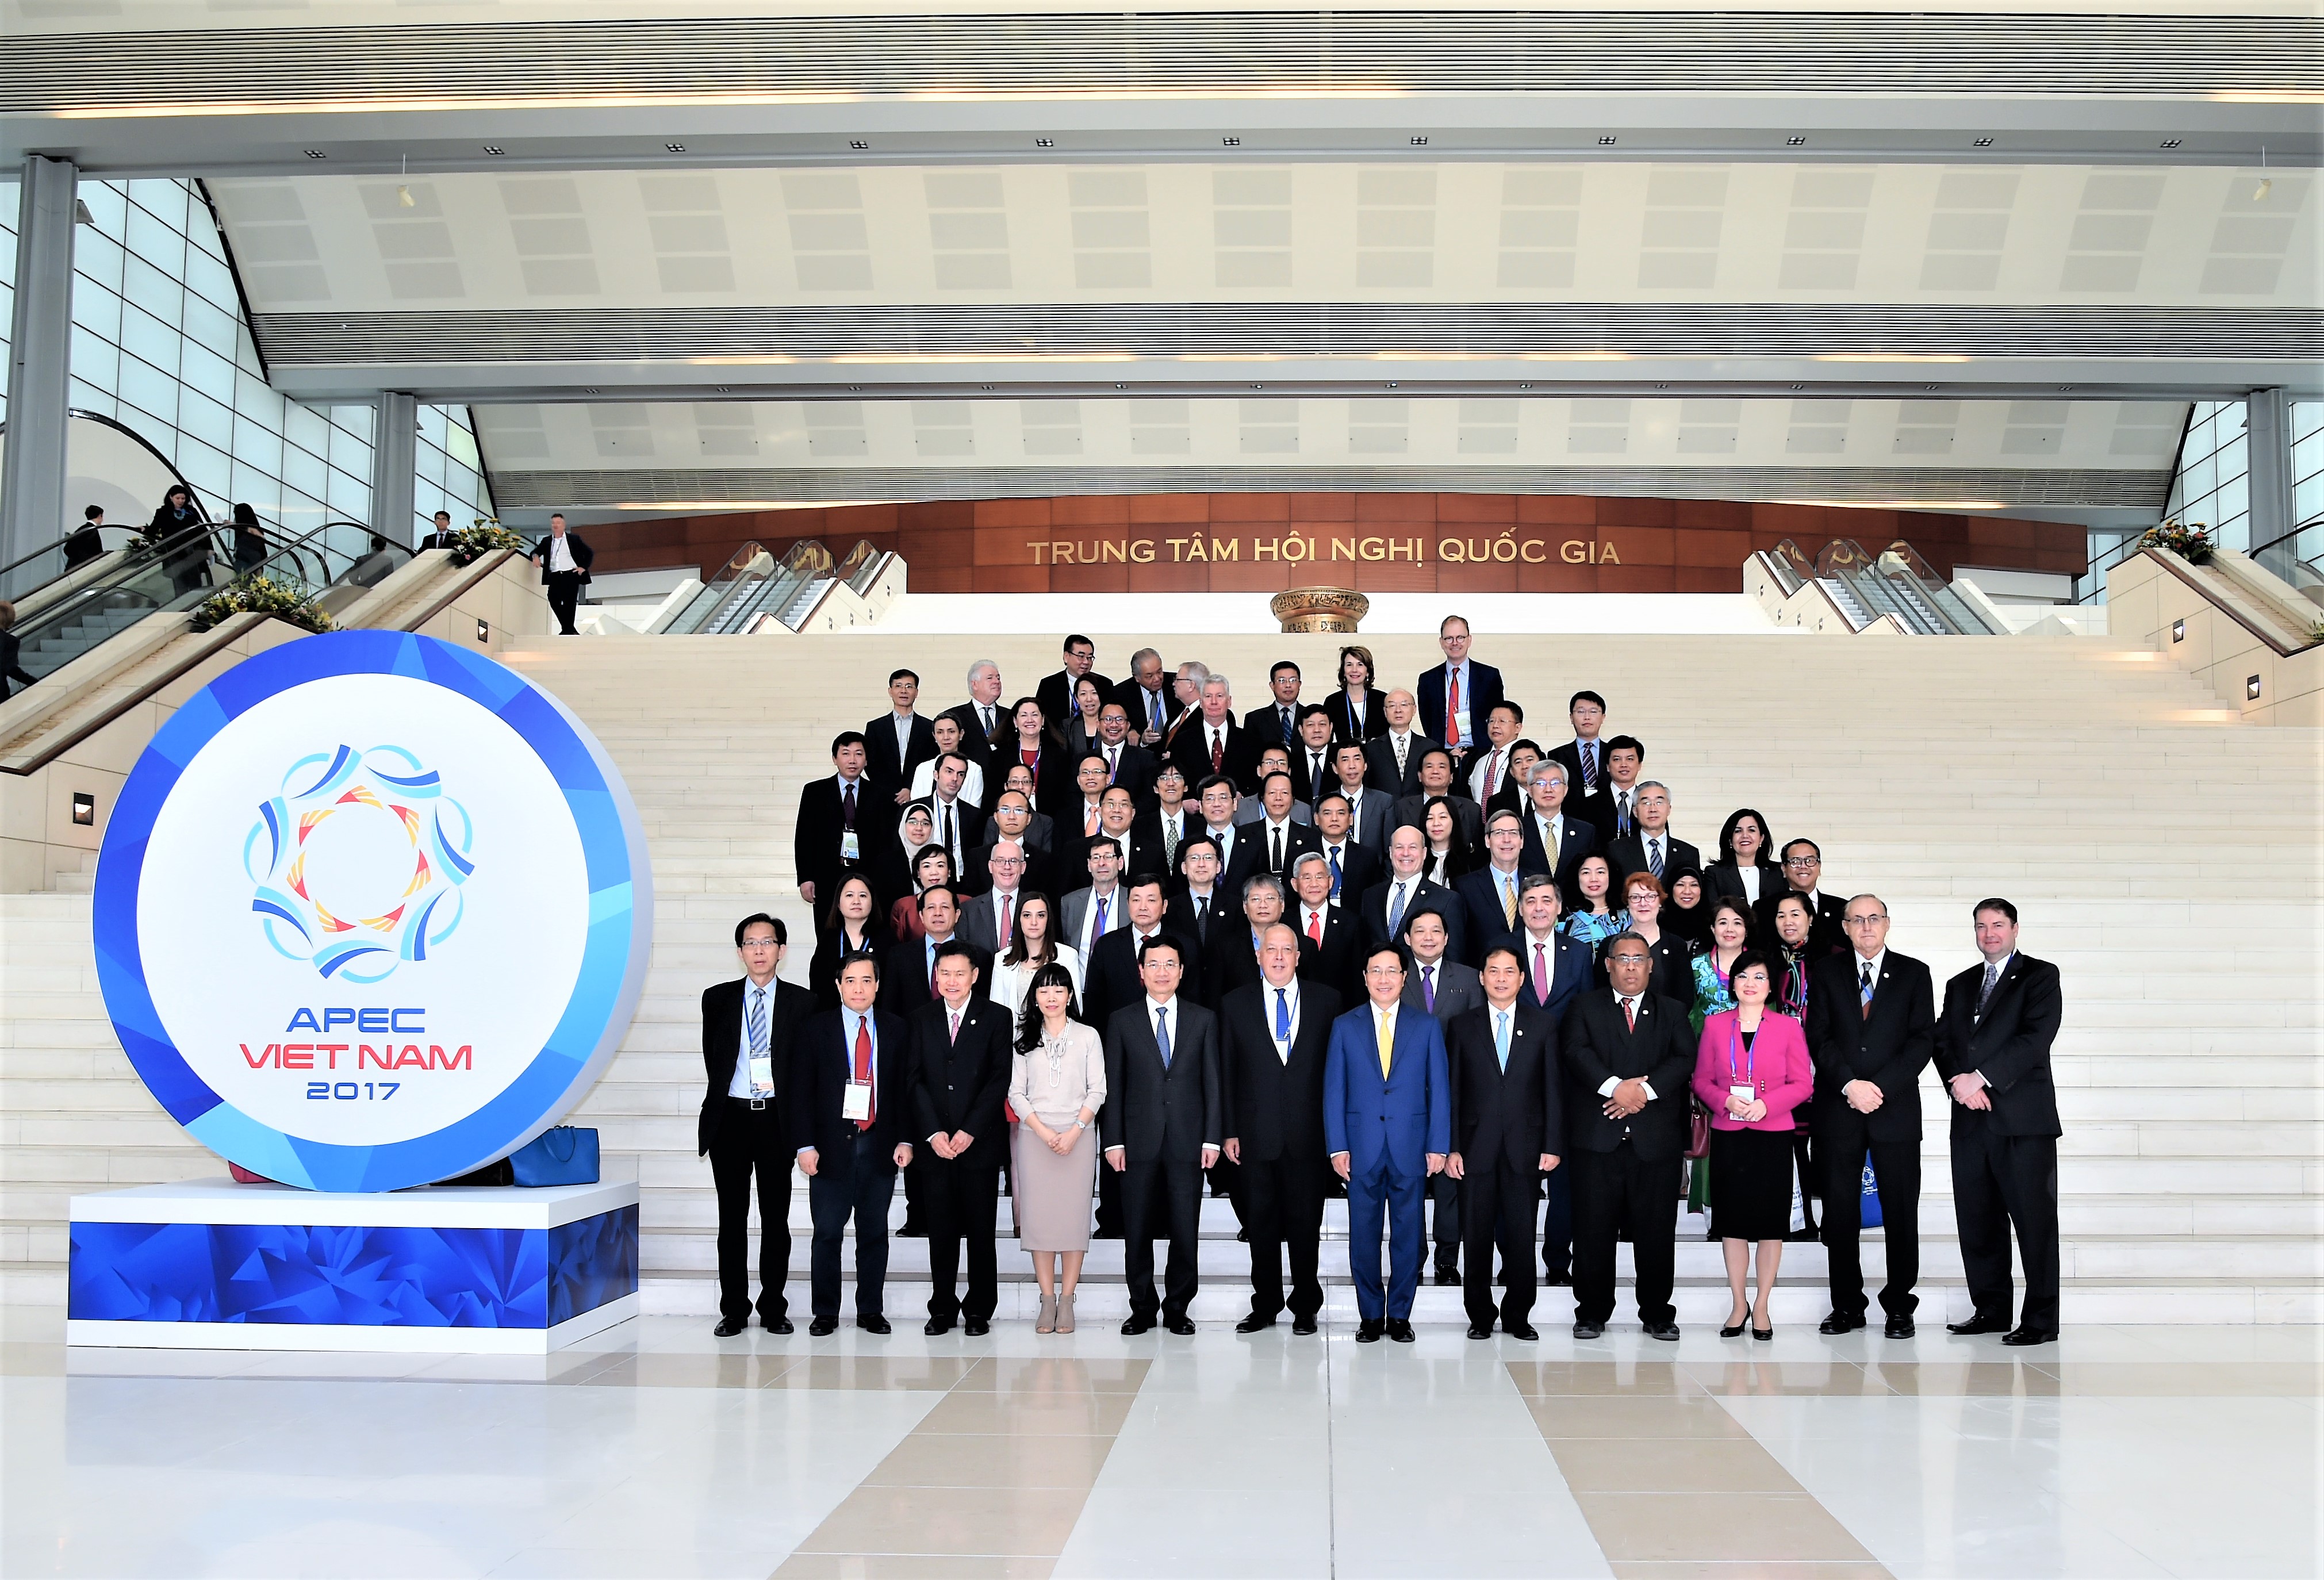 APEC 2017: Cơ hội để Việt Nam thúc đẩy cách mạng công nghiệp lần thứ 4